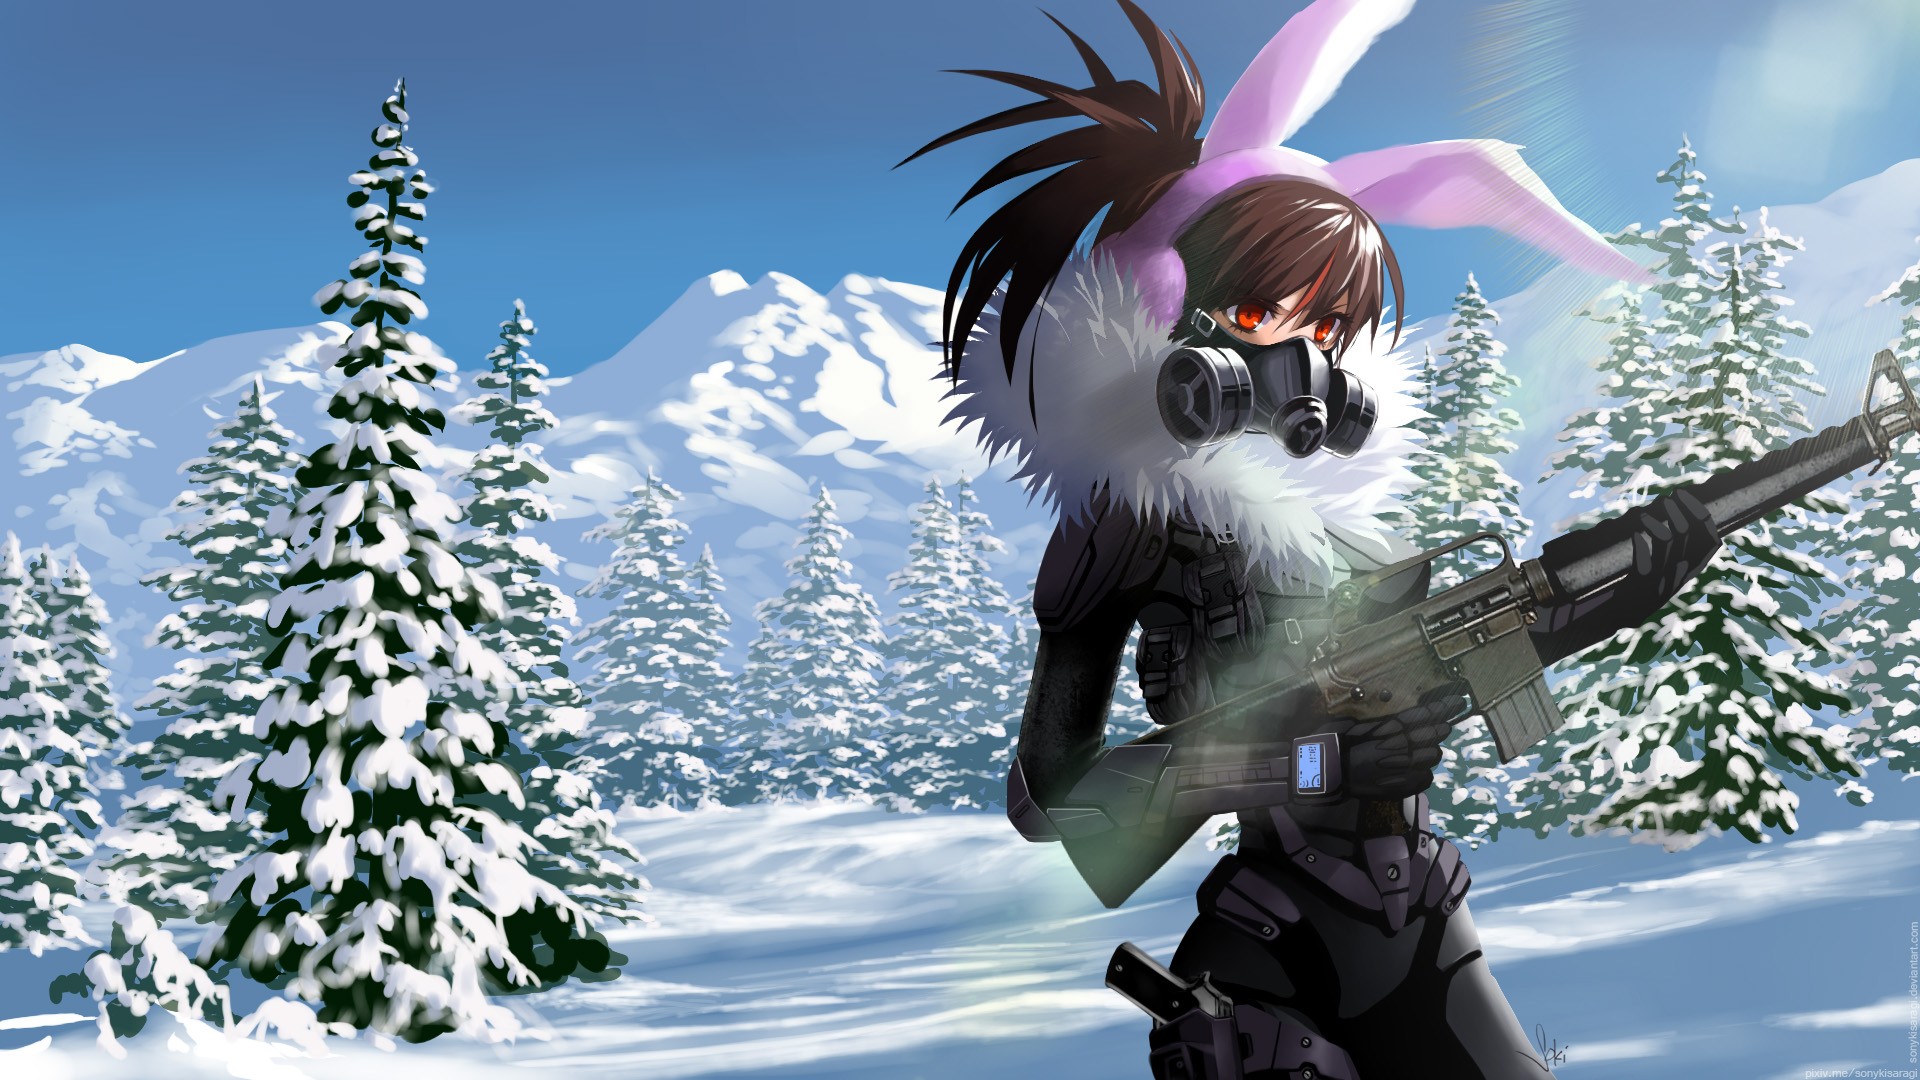 Anime Anime Girls Long Hair Snow Winter Weapon Gun Brunette Red Eyes Bunny Ears Headphones M16 1920x1080